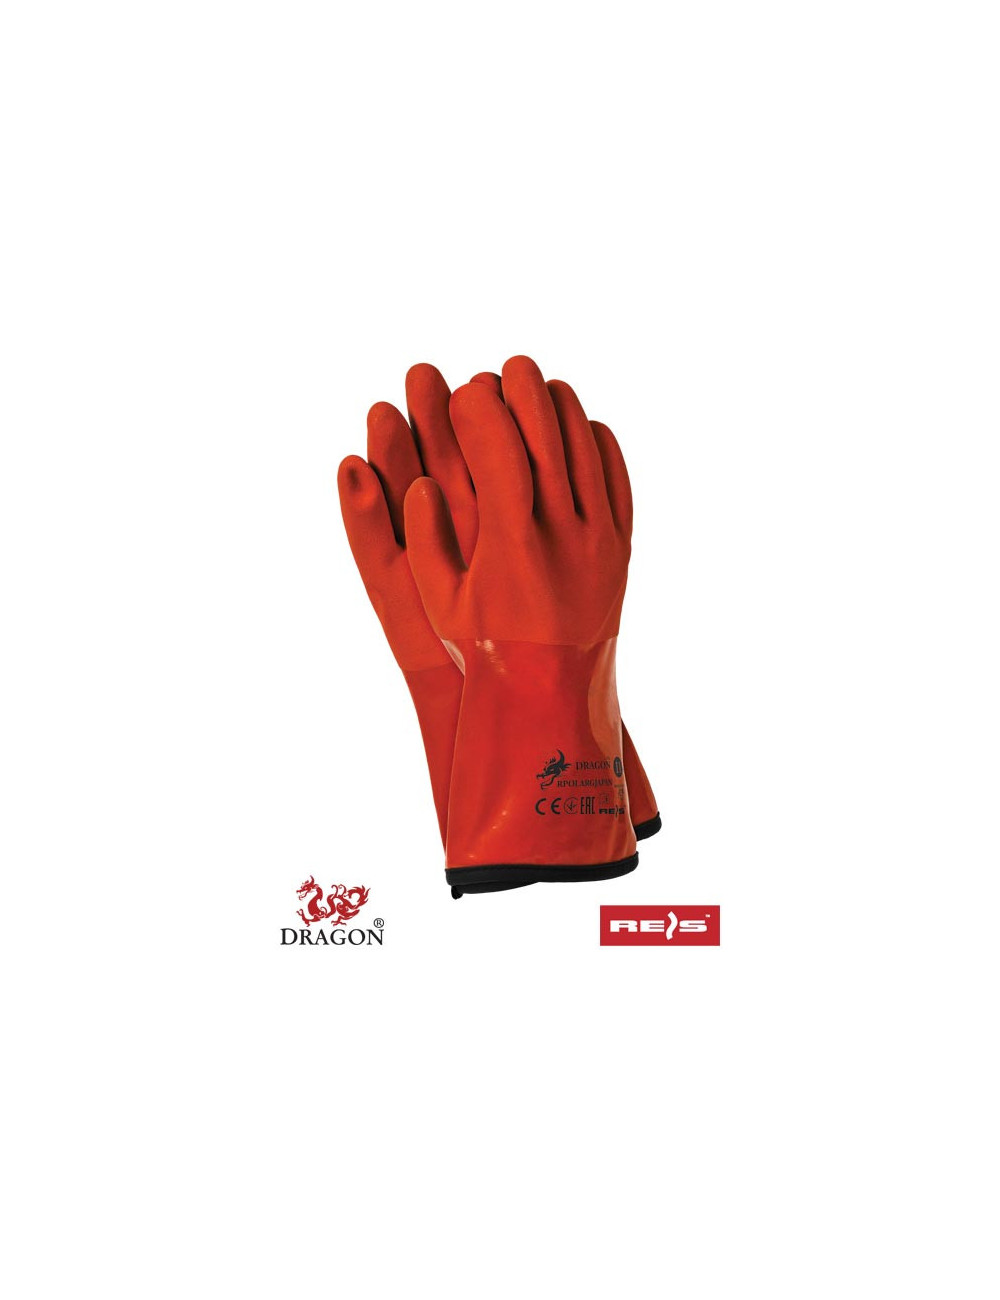 Protective gloves rpolargjapan p orange Reis